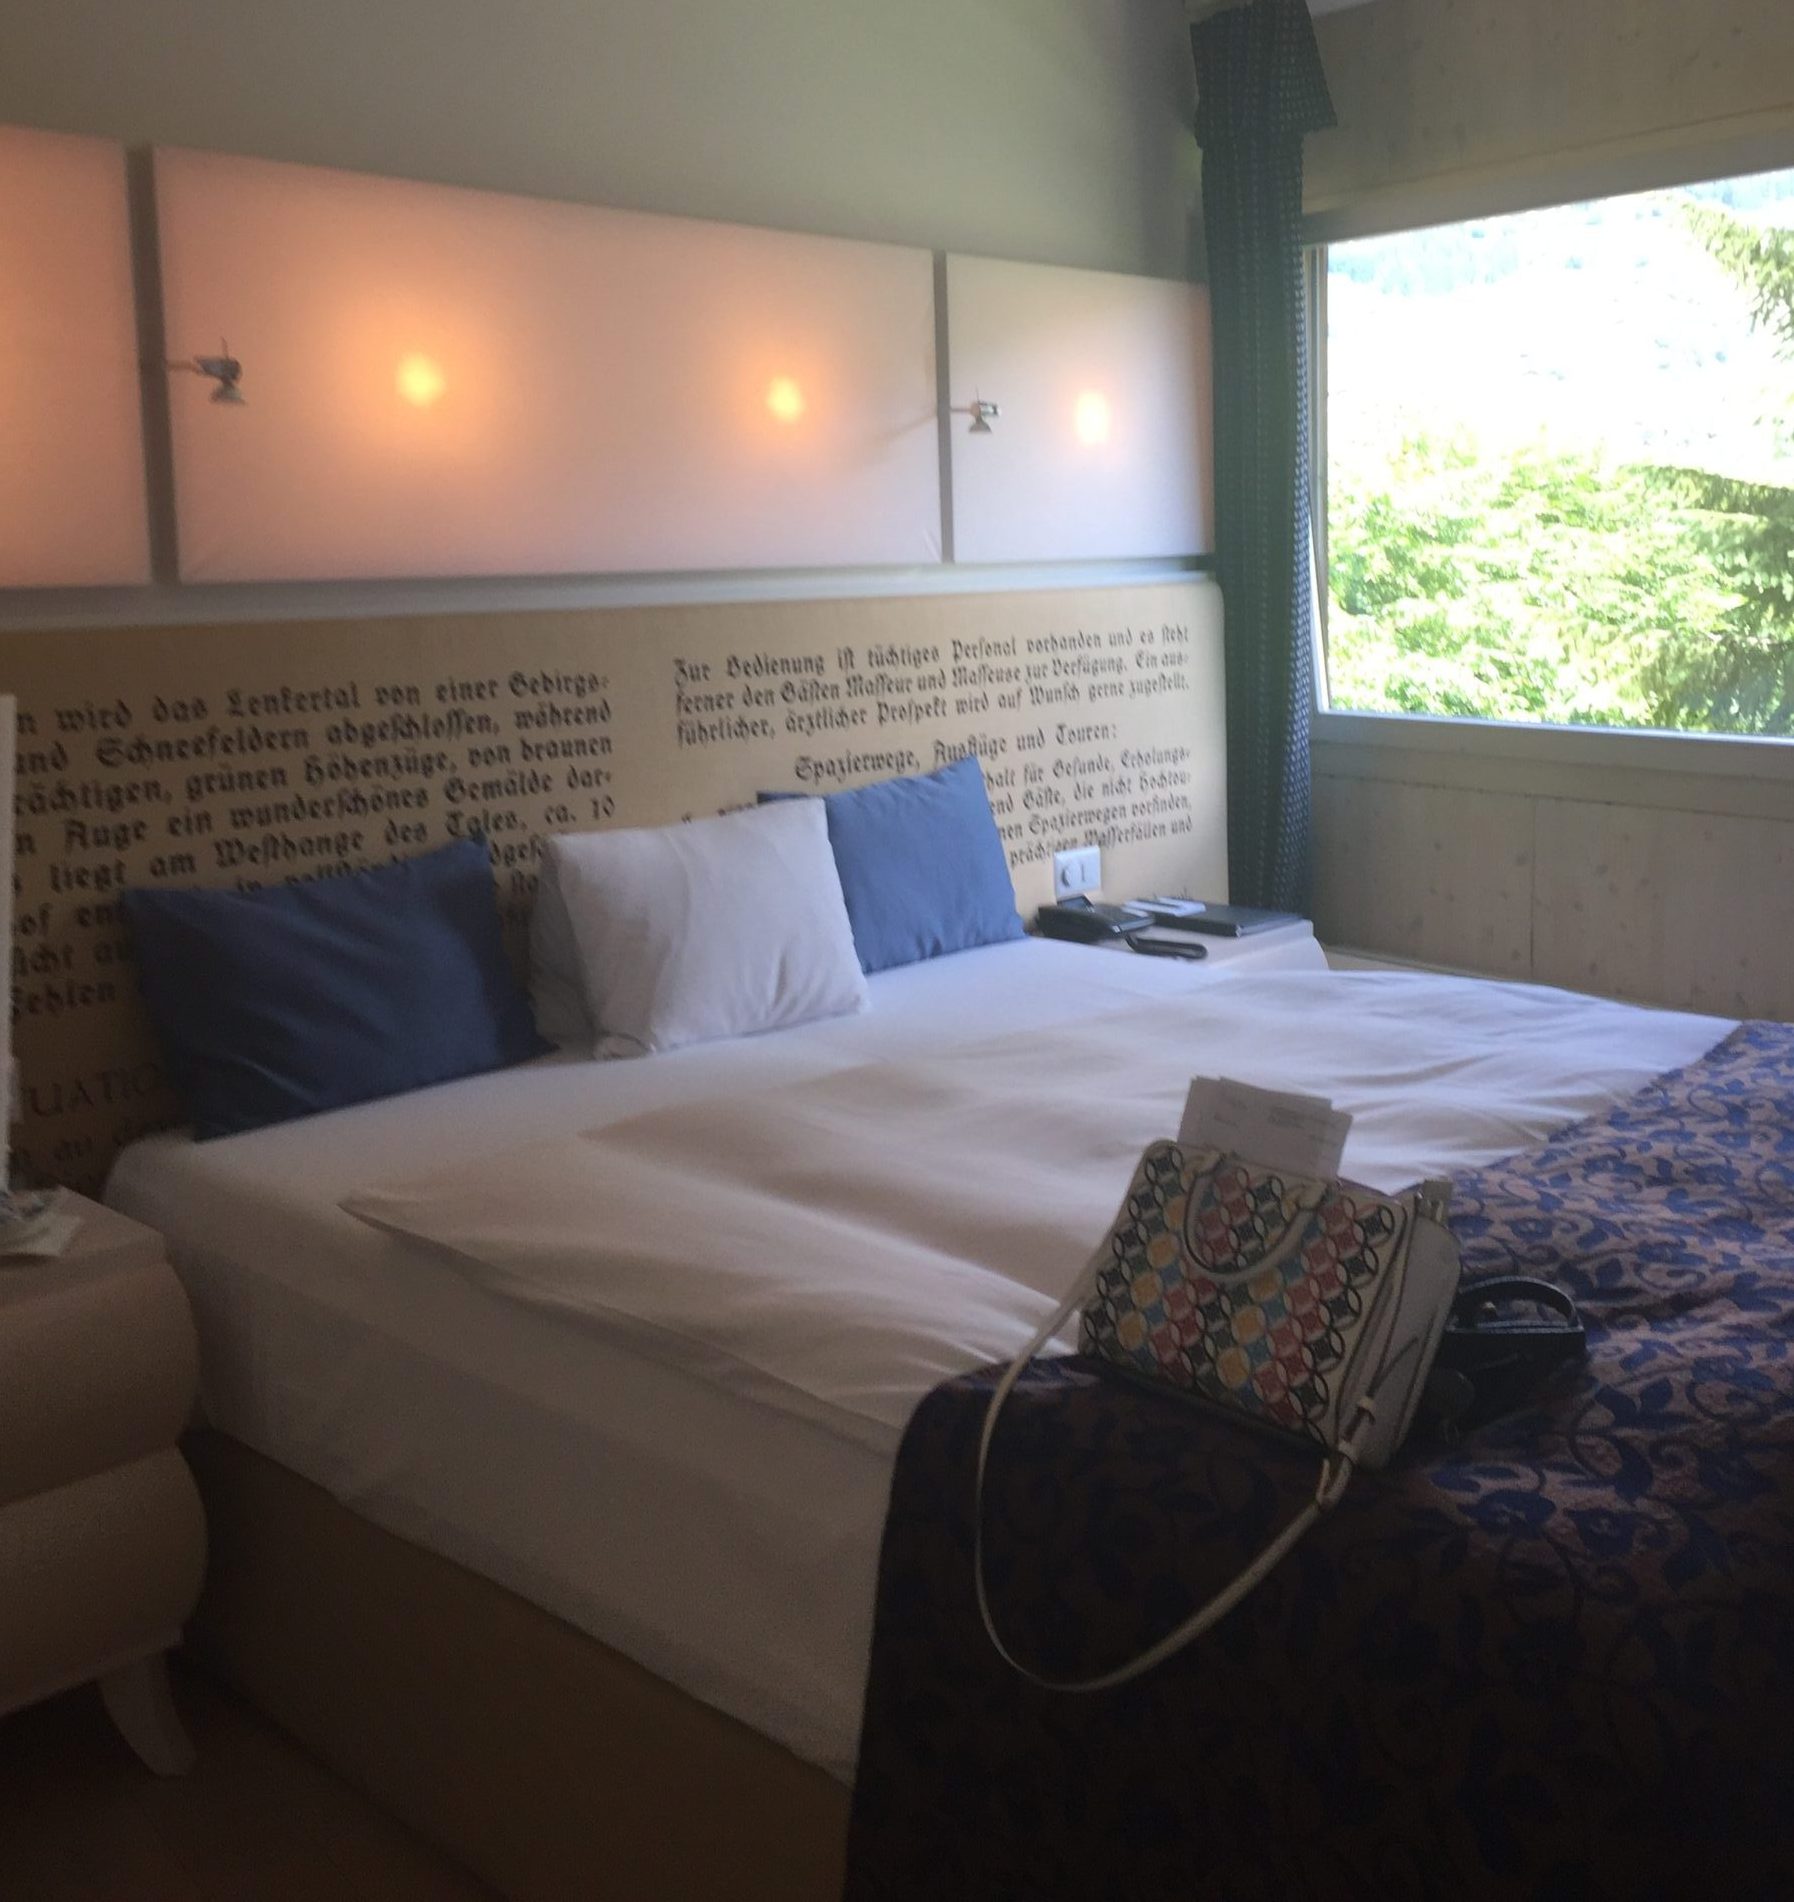 Loft Suite - Trennbarer Schlaf- Wohnbereich, freistehender Badewanne und traumhaften Ausblick. 